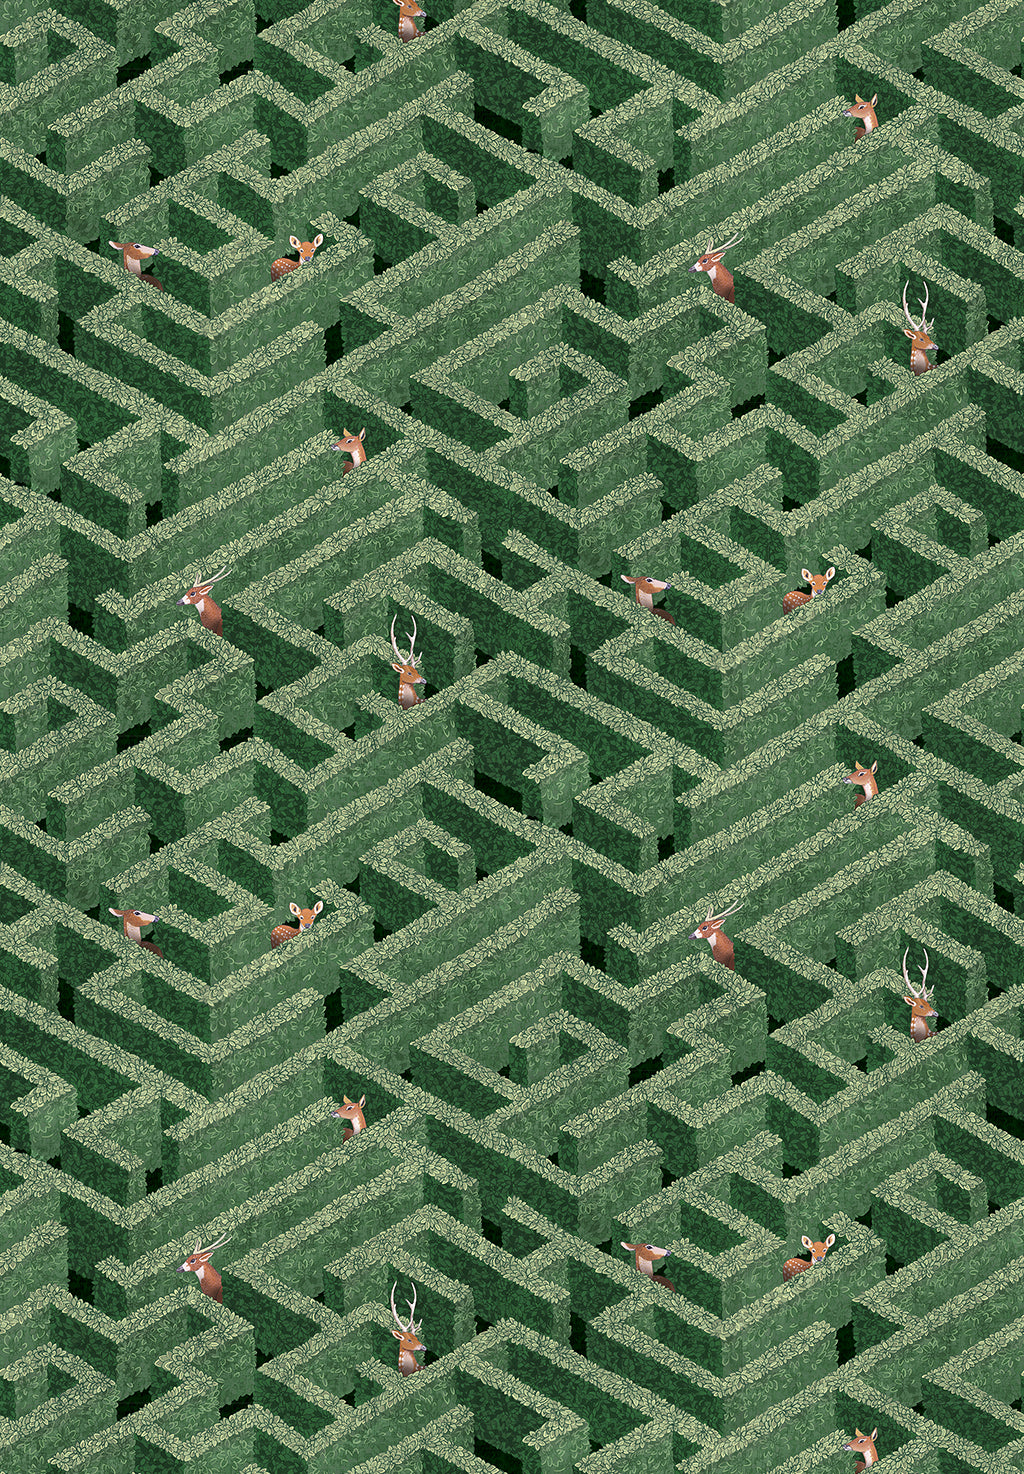 josephine-munsey-labrinth-wallpaper-deer-garden-maze